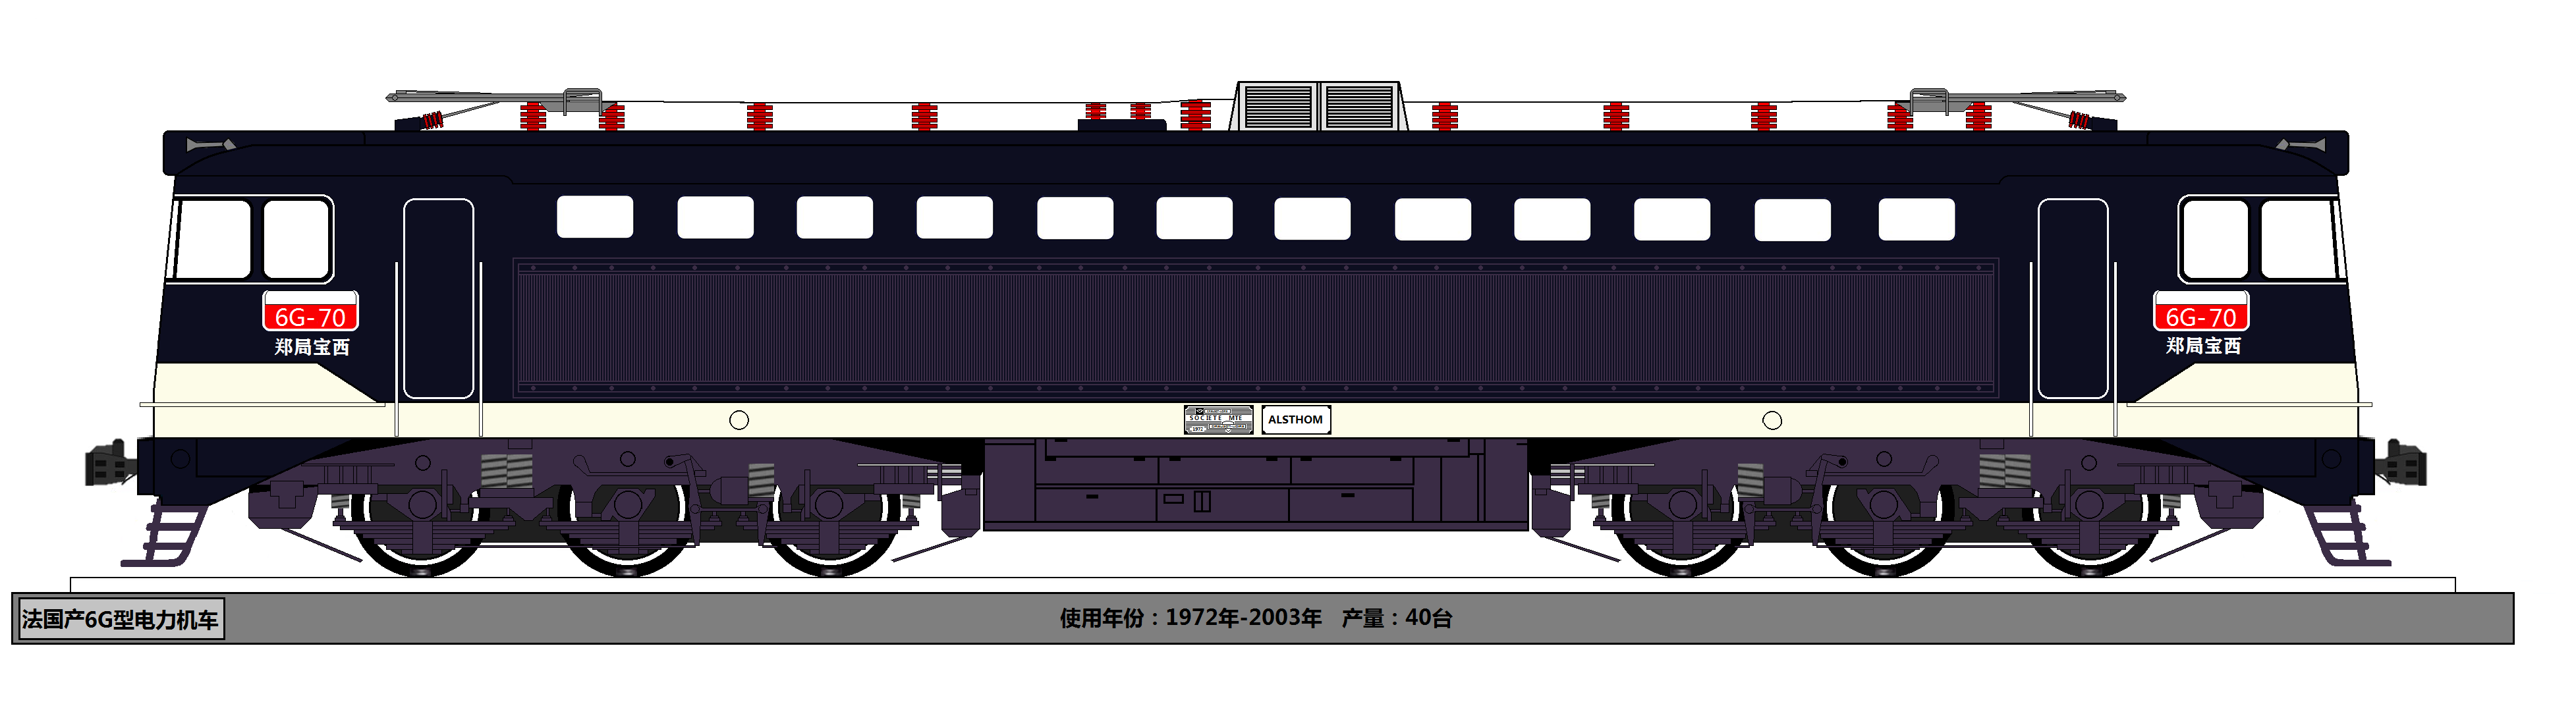 【火车画图贴】s01e02:鱼鱼的机务段——法国nd4型,8k